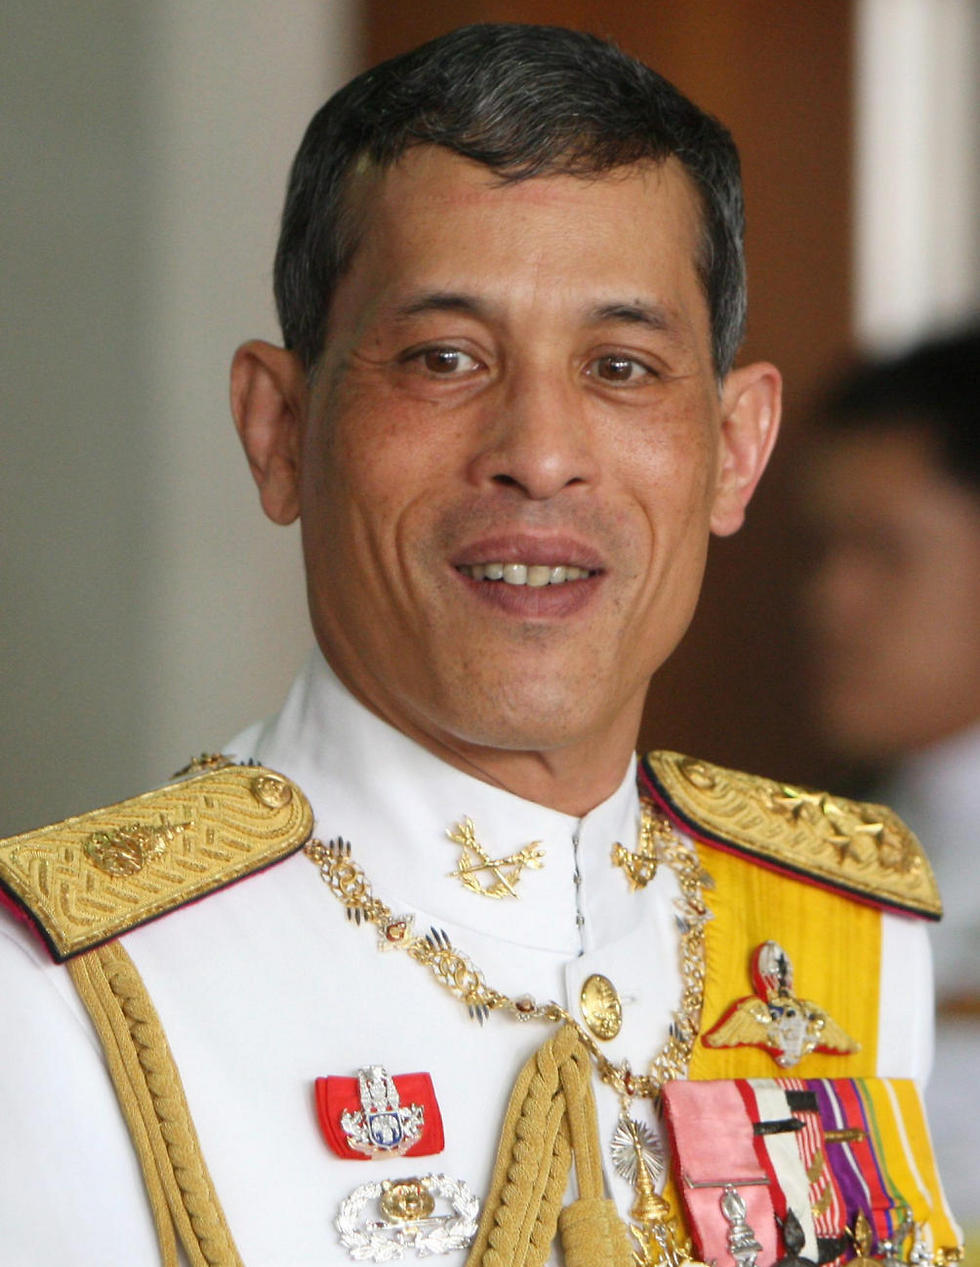 האיש שצפוי לרשת את כס המלוכה. הנסיך מהאה וג'ירלונגקורן (צילום: EPA) (צילום: EPA)